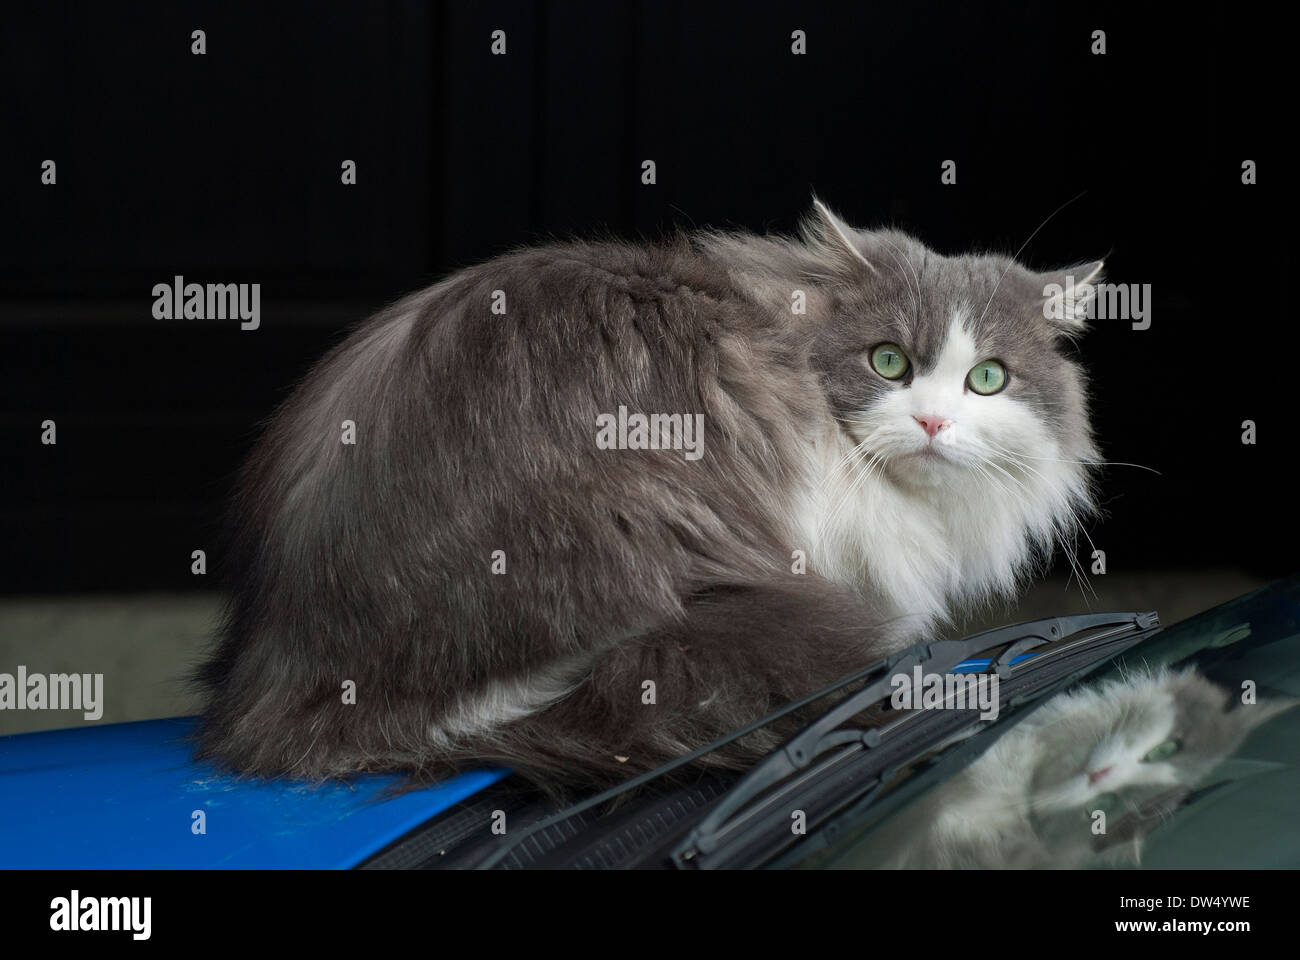 Domestic cat (Felis catus) on a car's bonnet Stock Photo